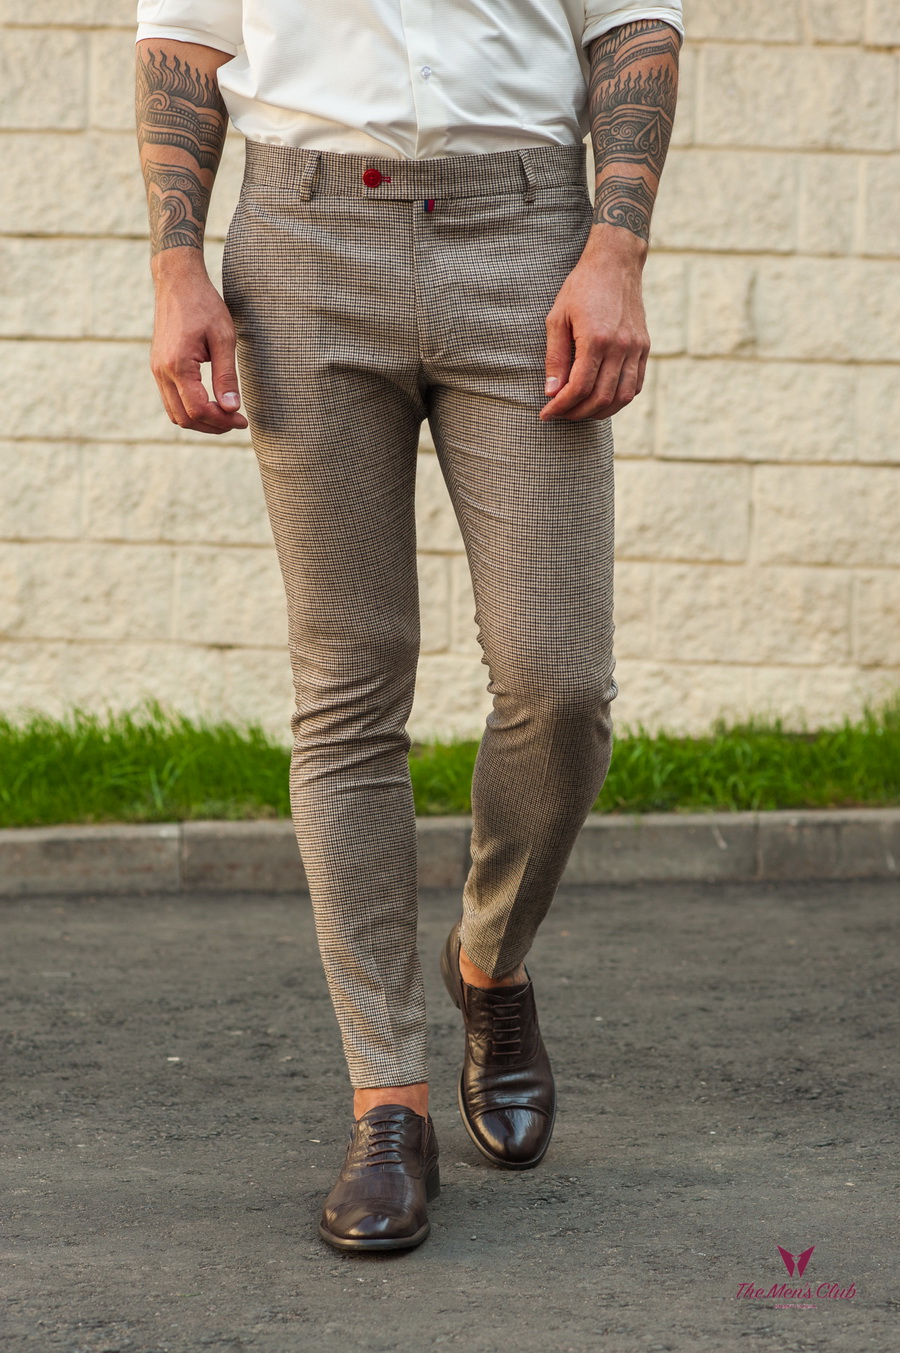 Мужские зауженные брюки с мелким узором. Арт.:6-570-3 – купить в магазинемужской одежды Smartcasuals